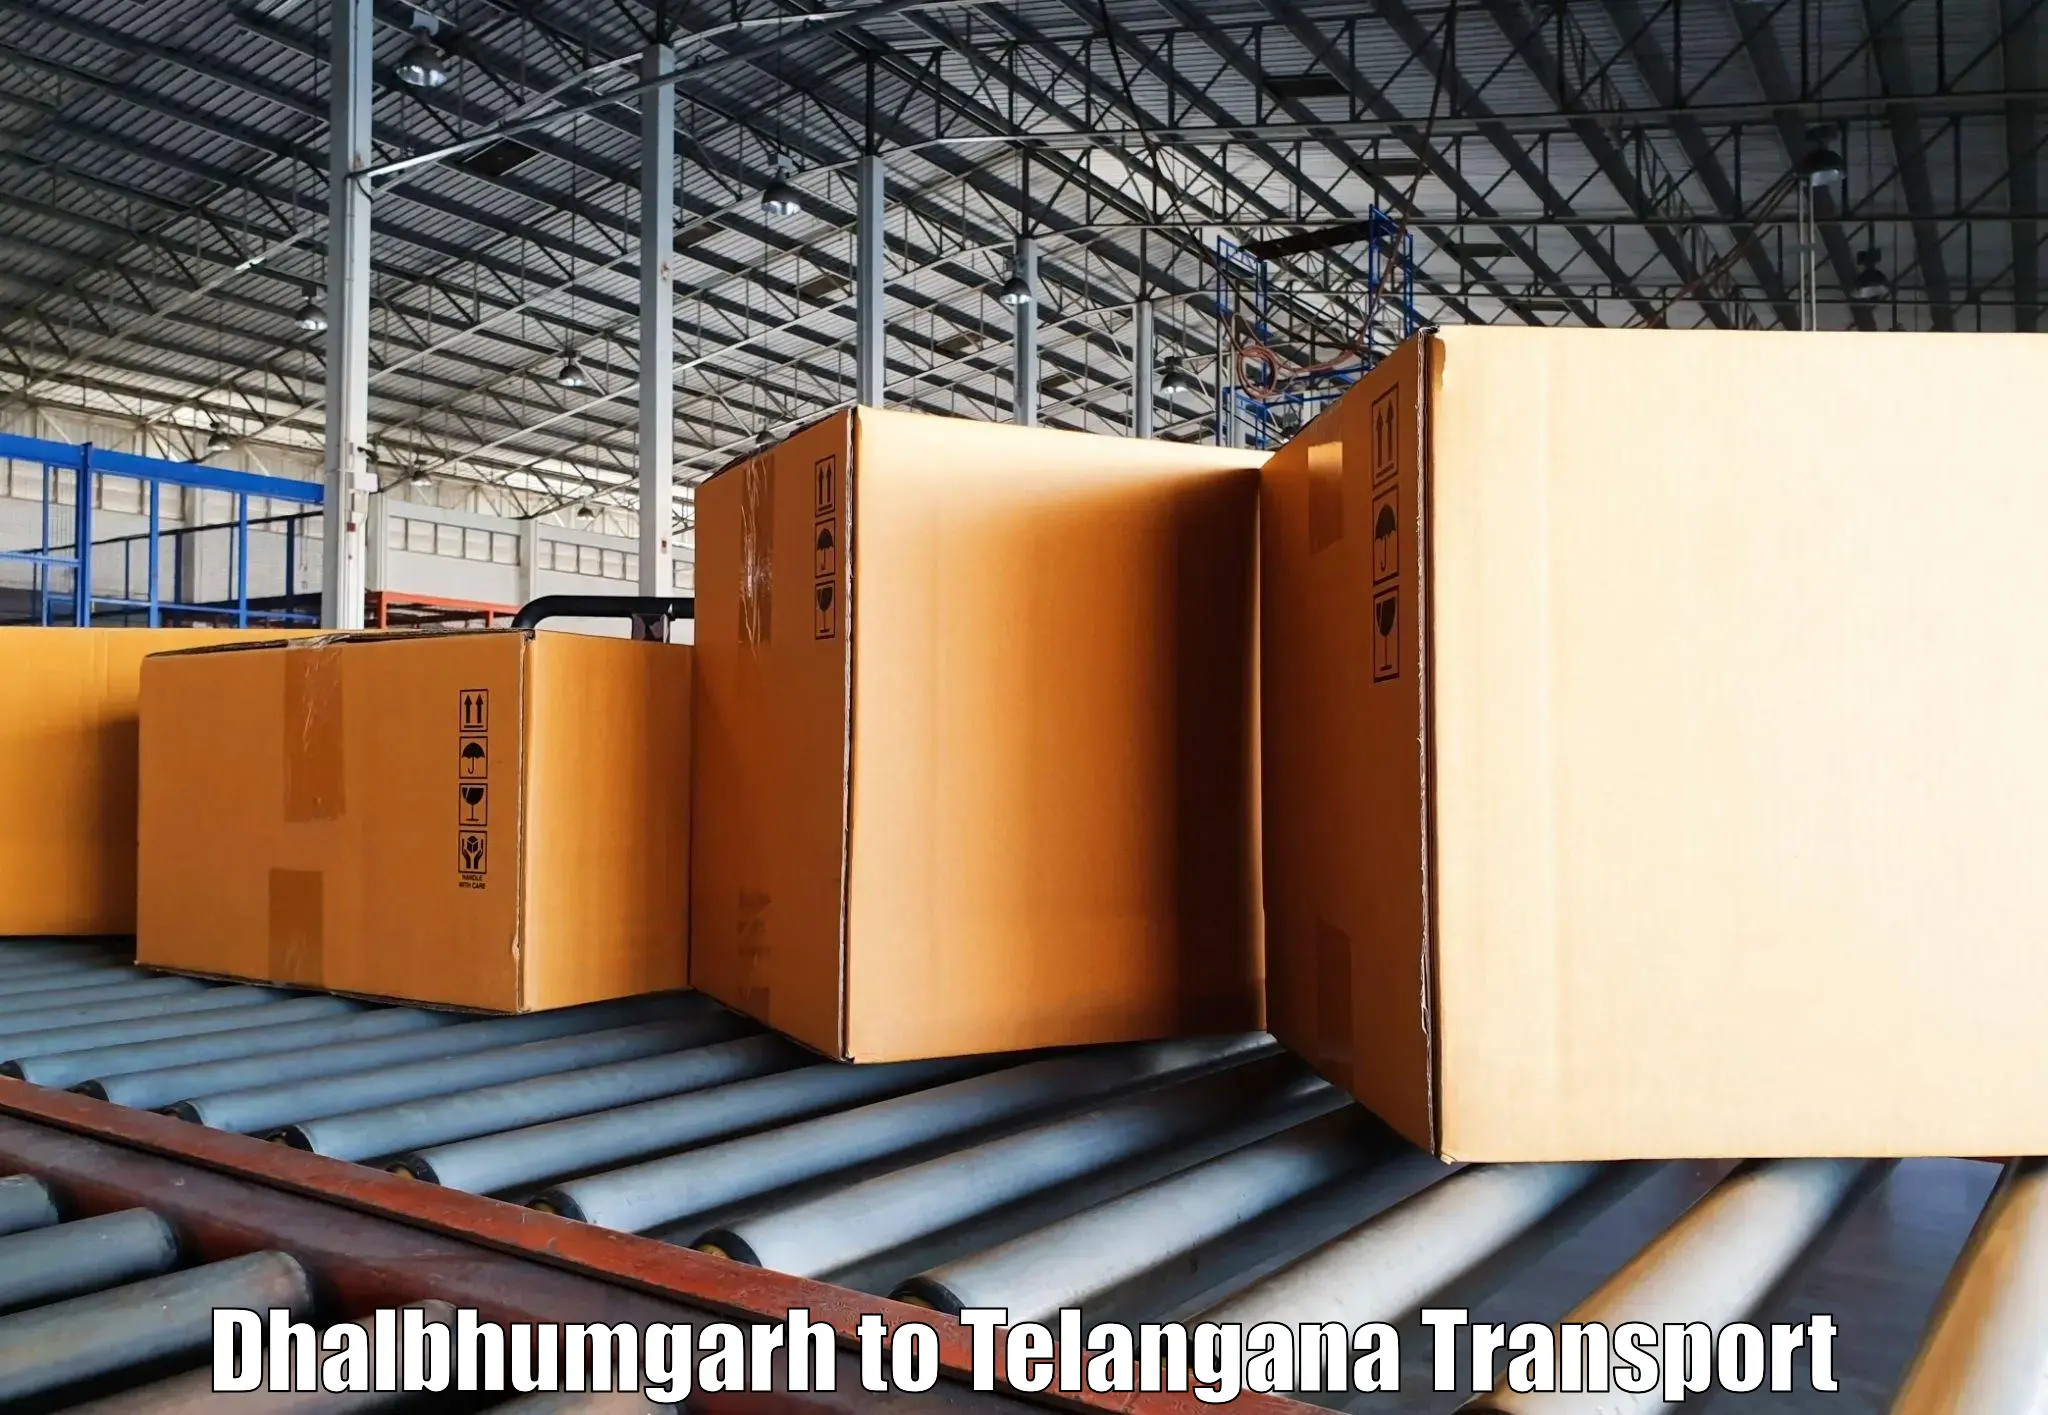 Online transport service in Dhalbhumgarh to Mahabubnagar